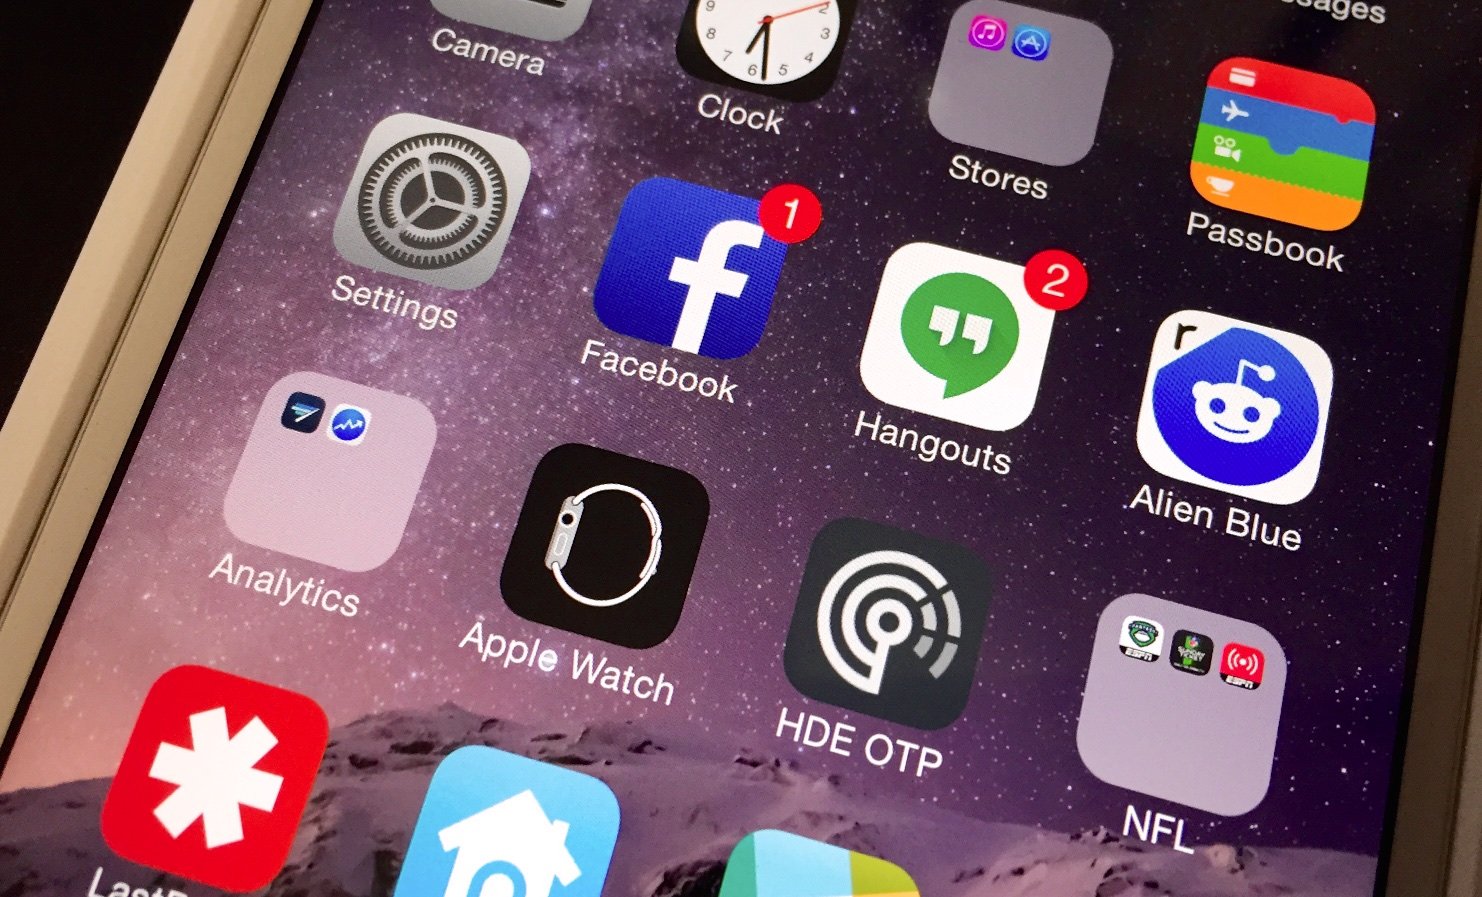 The iOS 8.2 update installs an Apple Watch app.